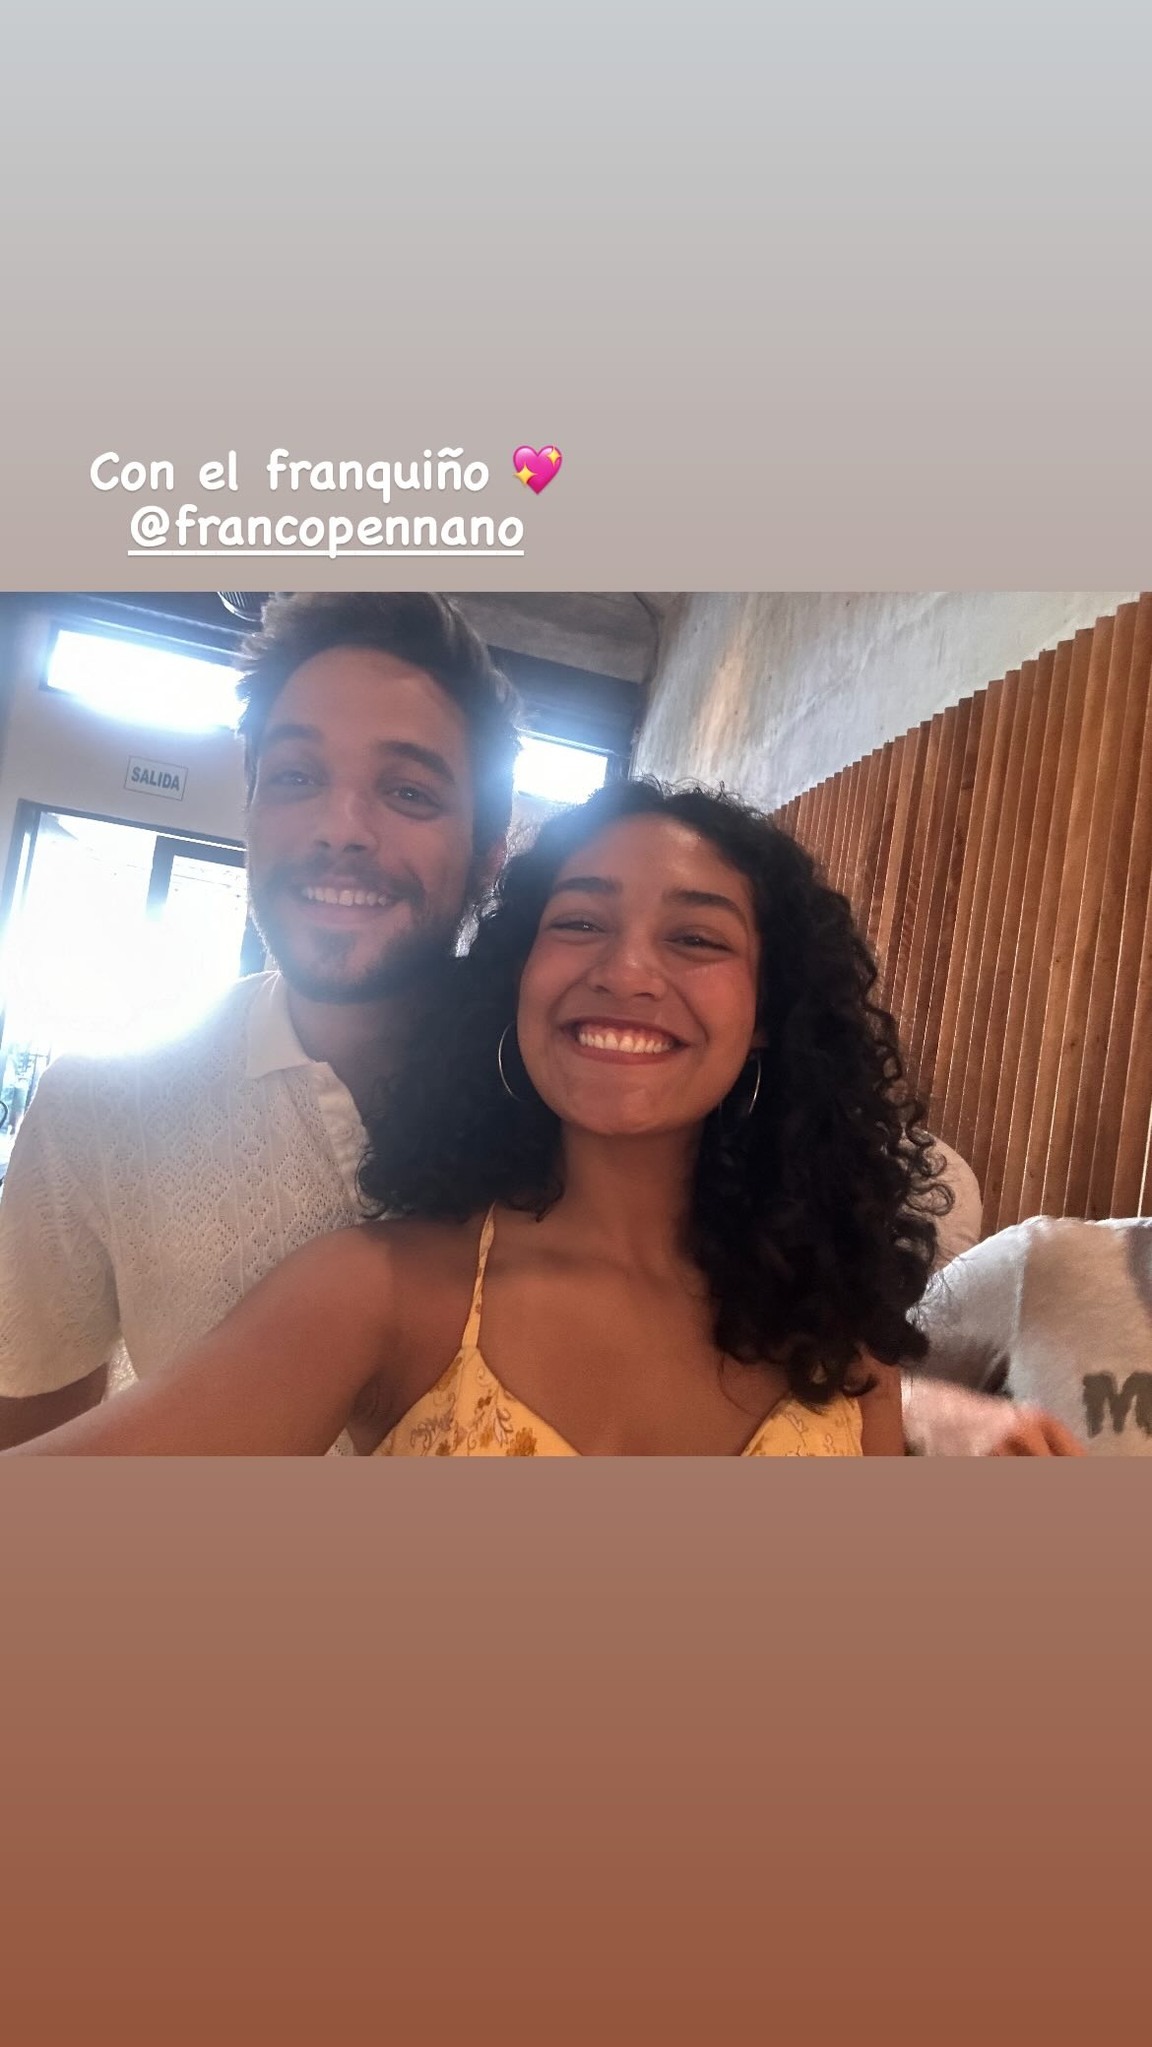 Franco Pennano estrenó nuevo look en reencuentro con Guadalupe Farfán. Fuente: Instagram